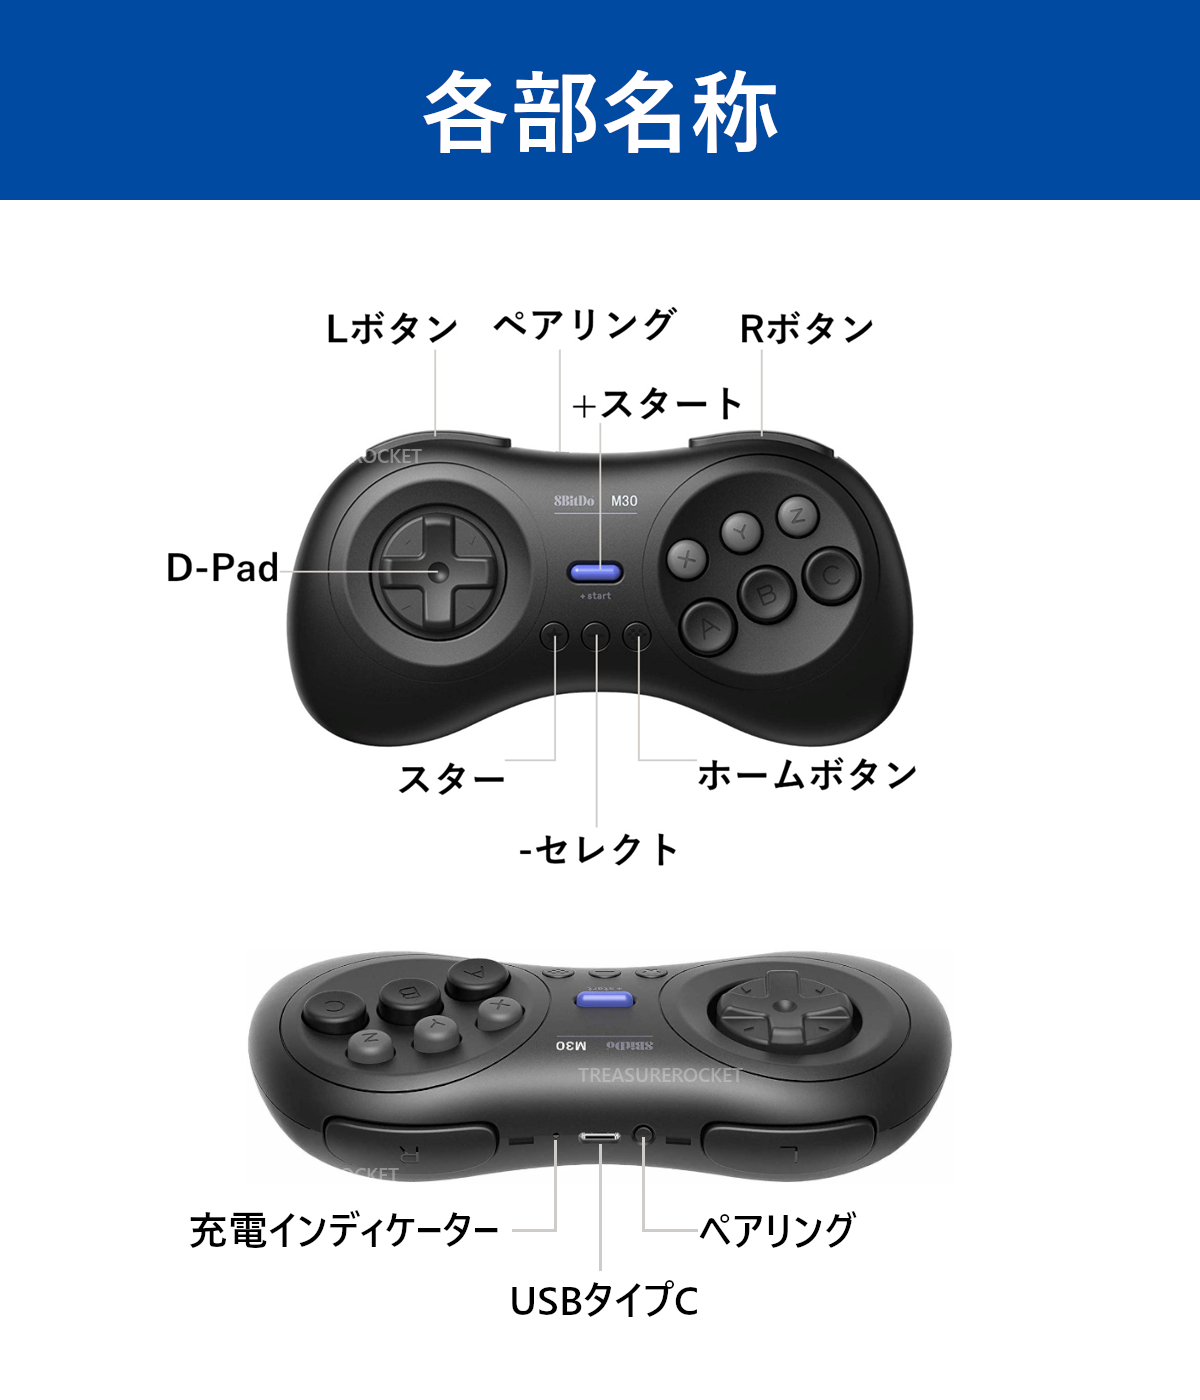 楽天市場 正規品 8bitdo M30 Bluetooth Wireless Gamepad ゲーミングコントローラー 6ボタン ゲームパッド 日本語説明書付 3カ月保証 Raspberry Pi Switch Macos M30 ユア トレジャー